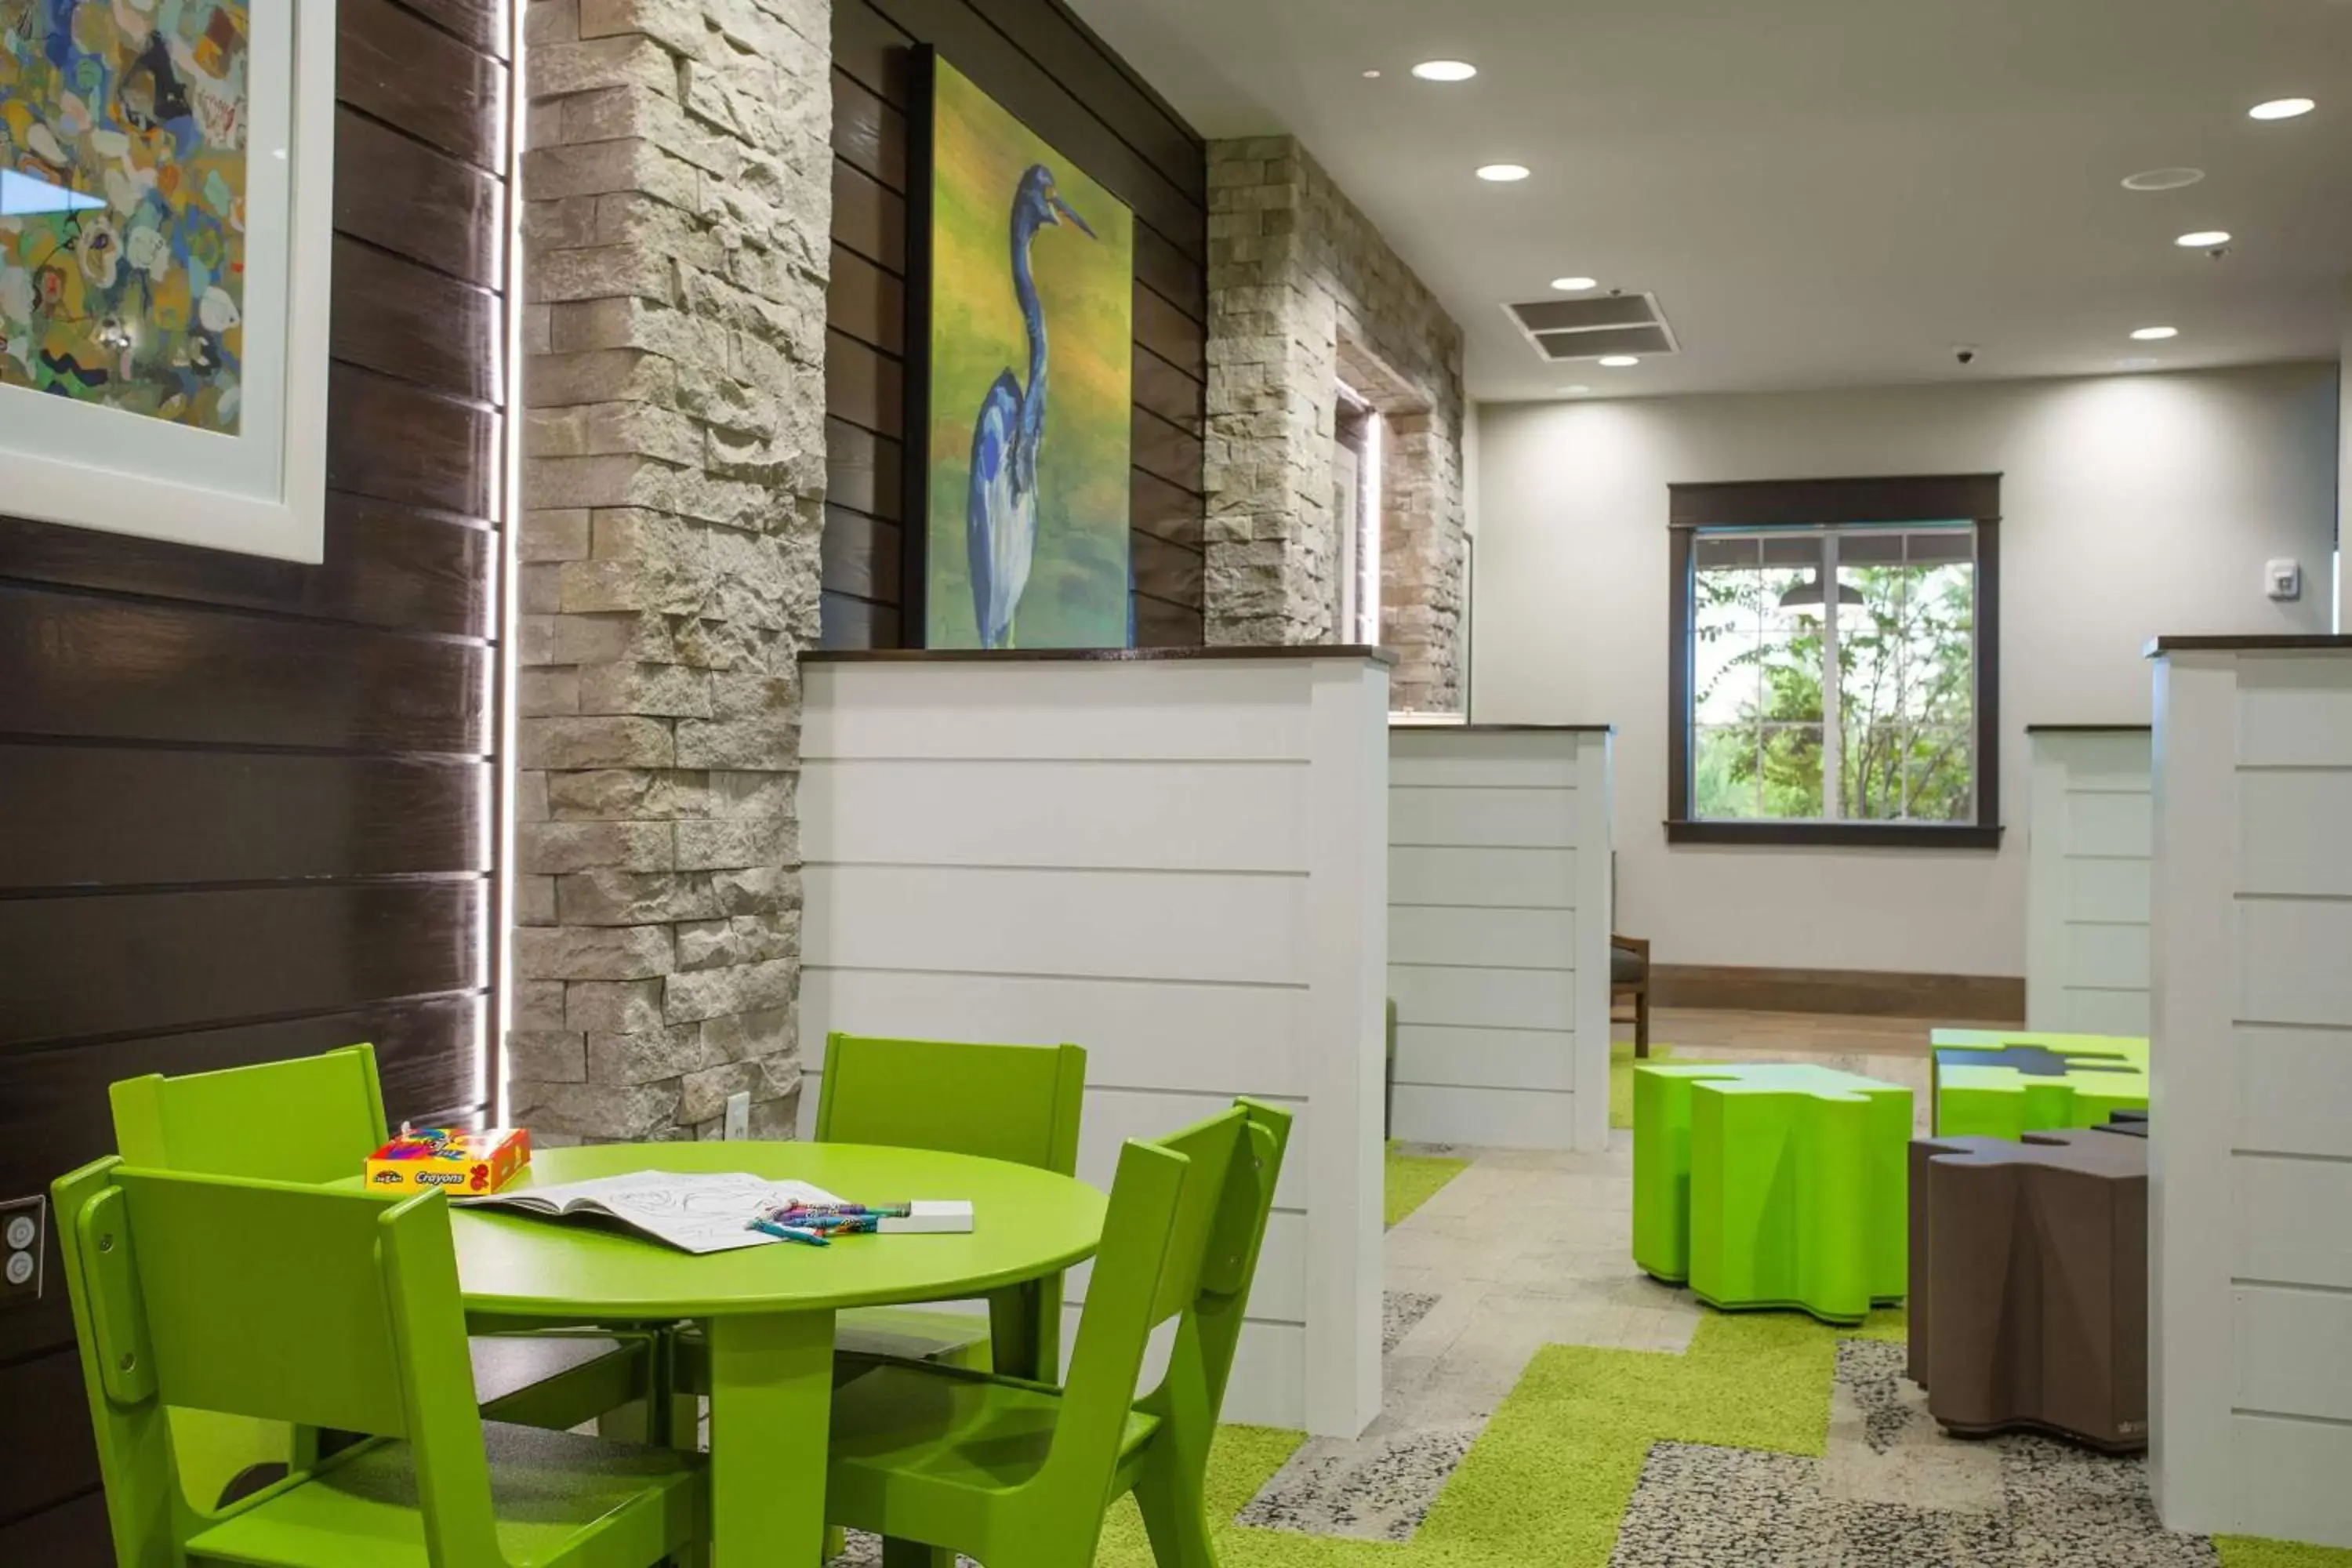 Lobby or reception in Hilton Vacation Club Mystic Dunes Orlando